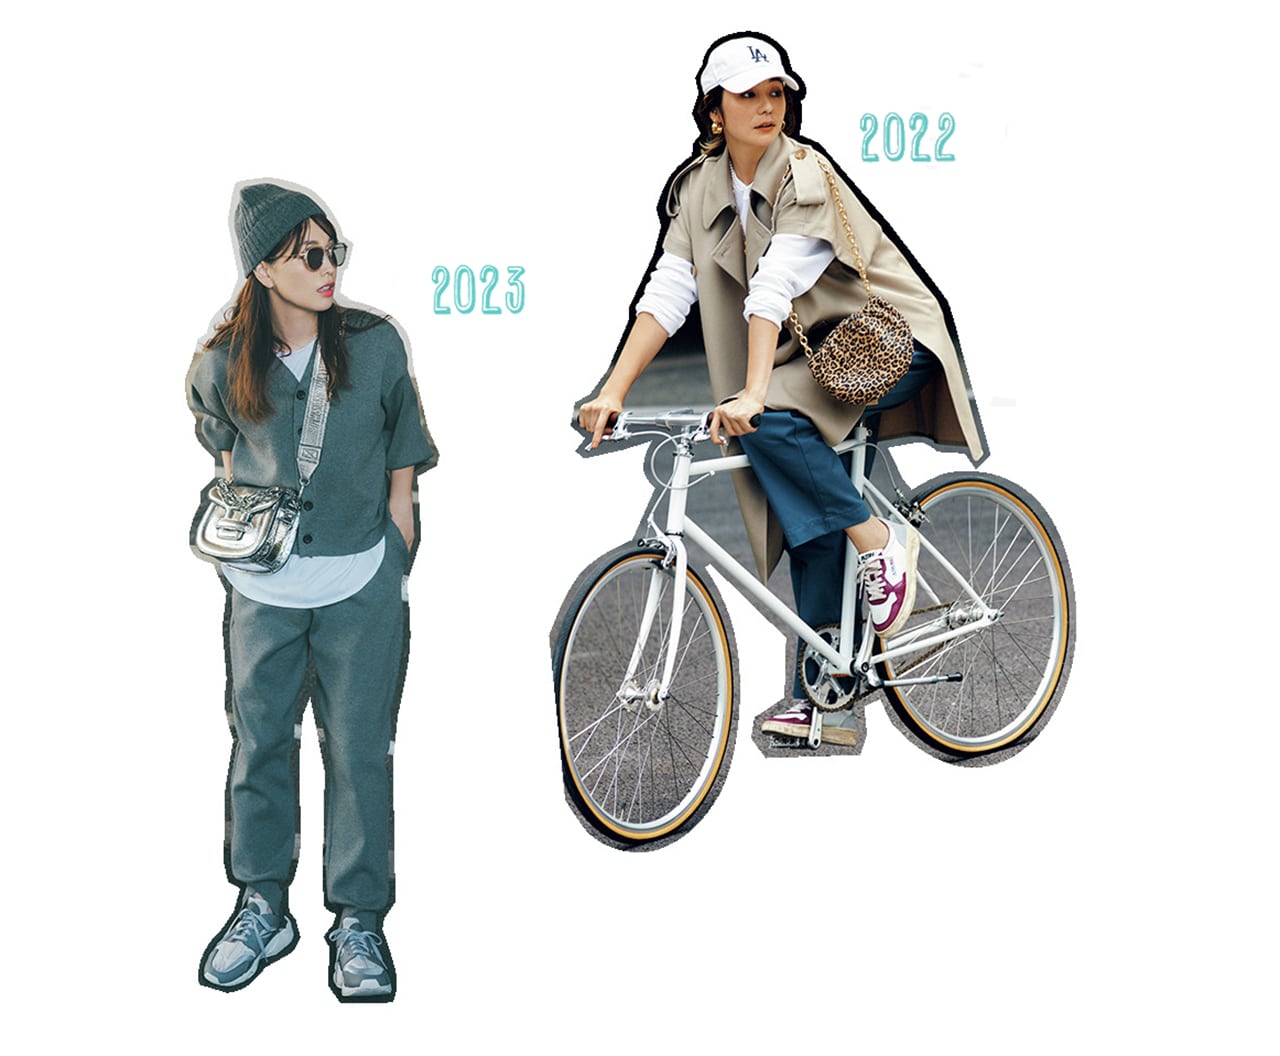 （右）’22年10月号ではブレイク前のオートリーにいち早く注目。（左）’23年10月号のナイキのハイテクスニーカーを用いたグレーコーデも読者に大人気で、同じモデルを購入する人が続出！